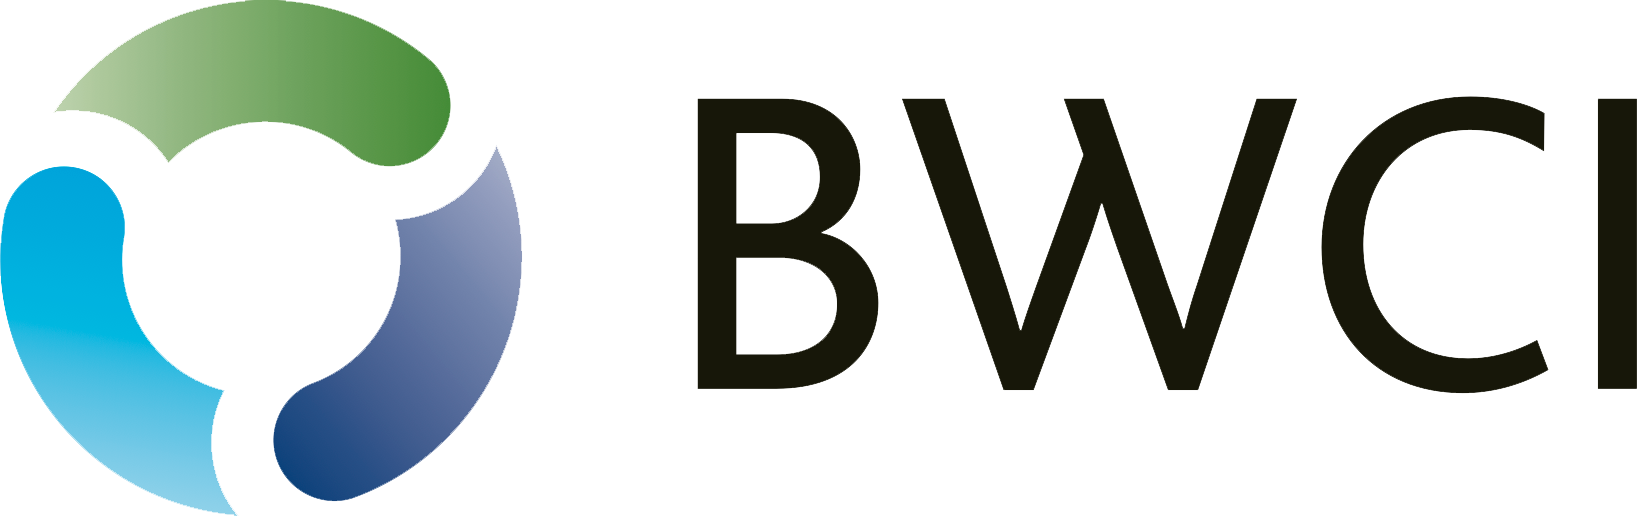 BWCI_logo